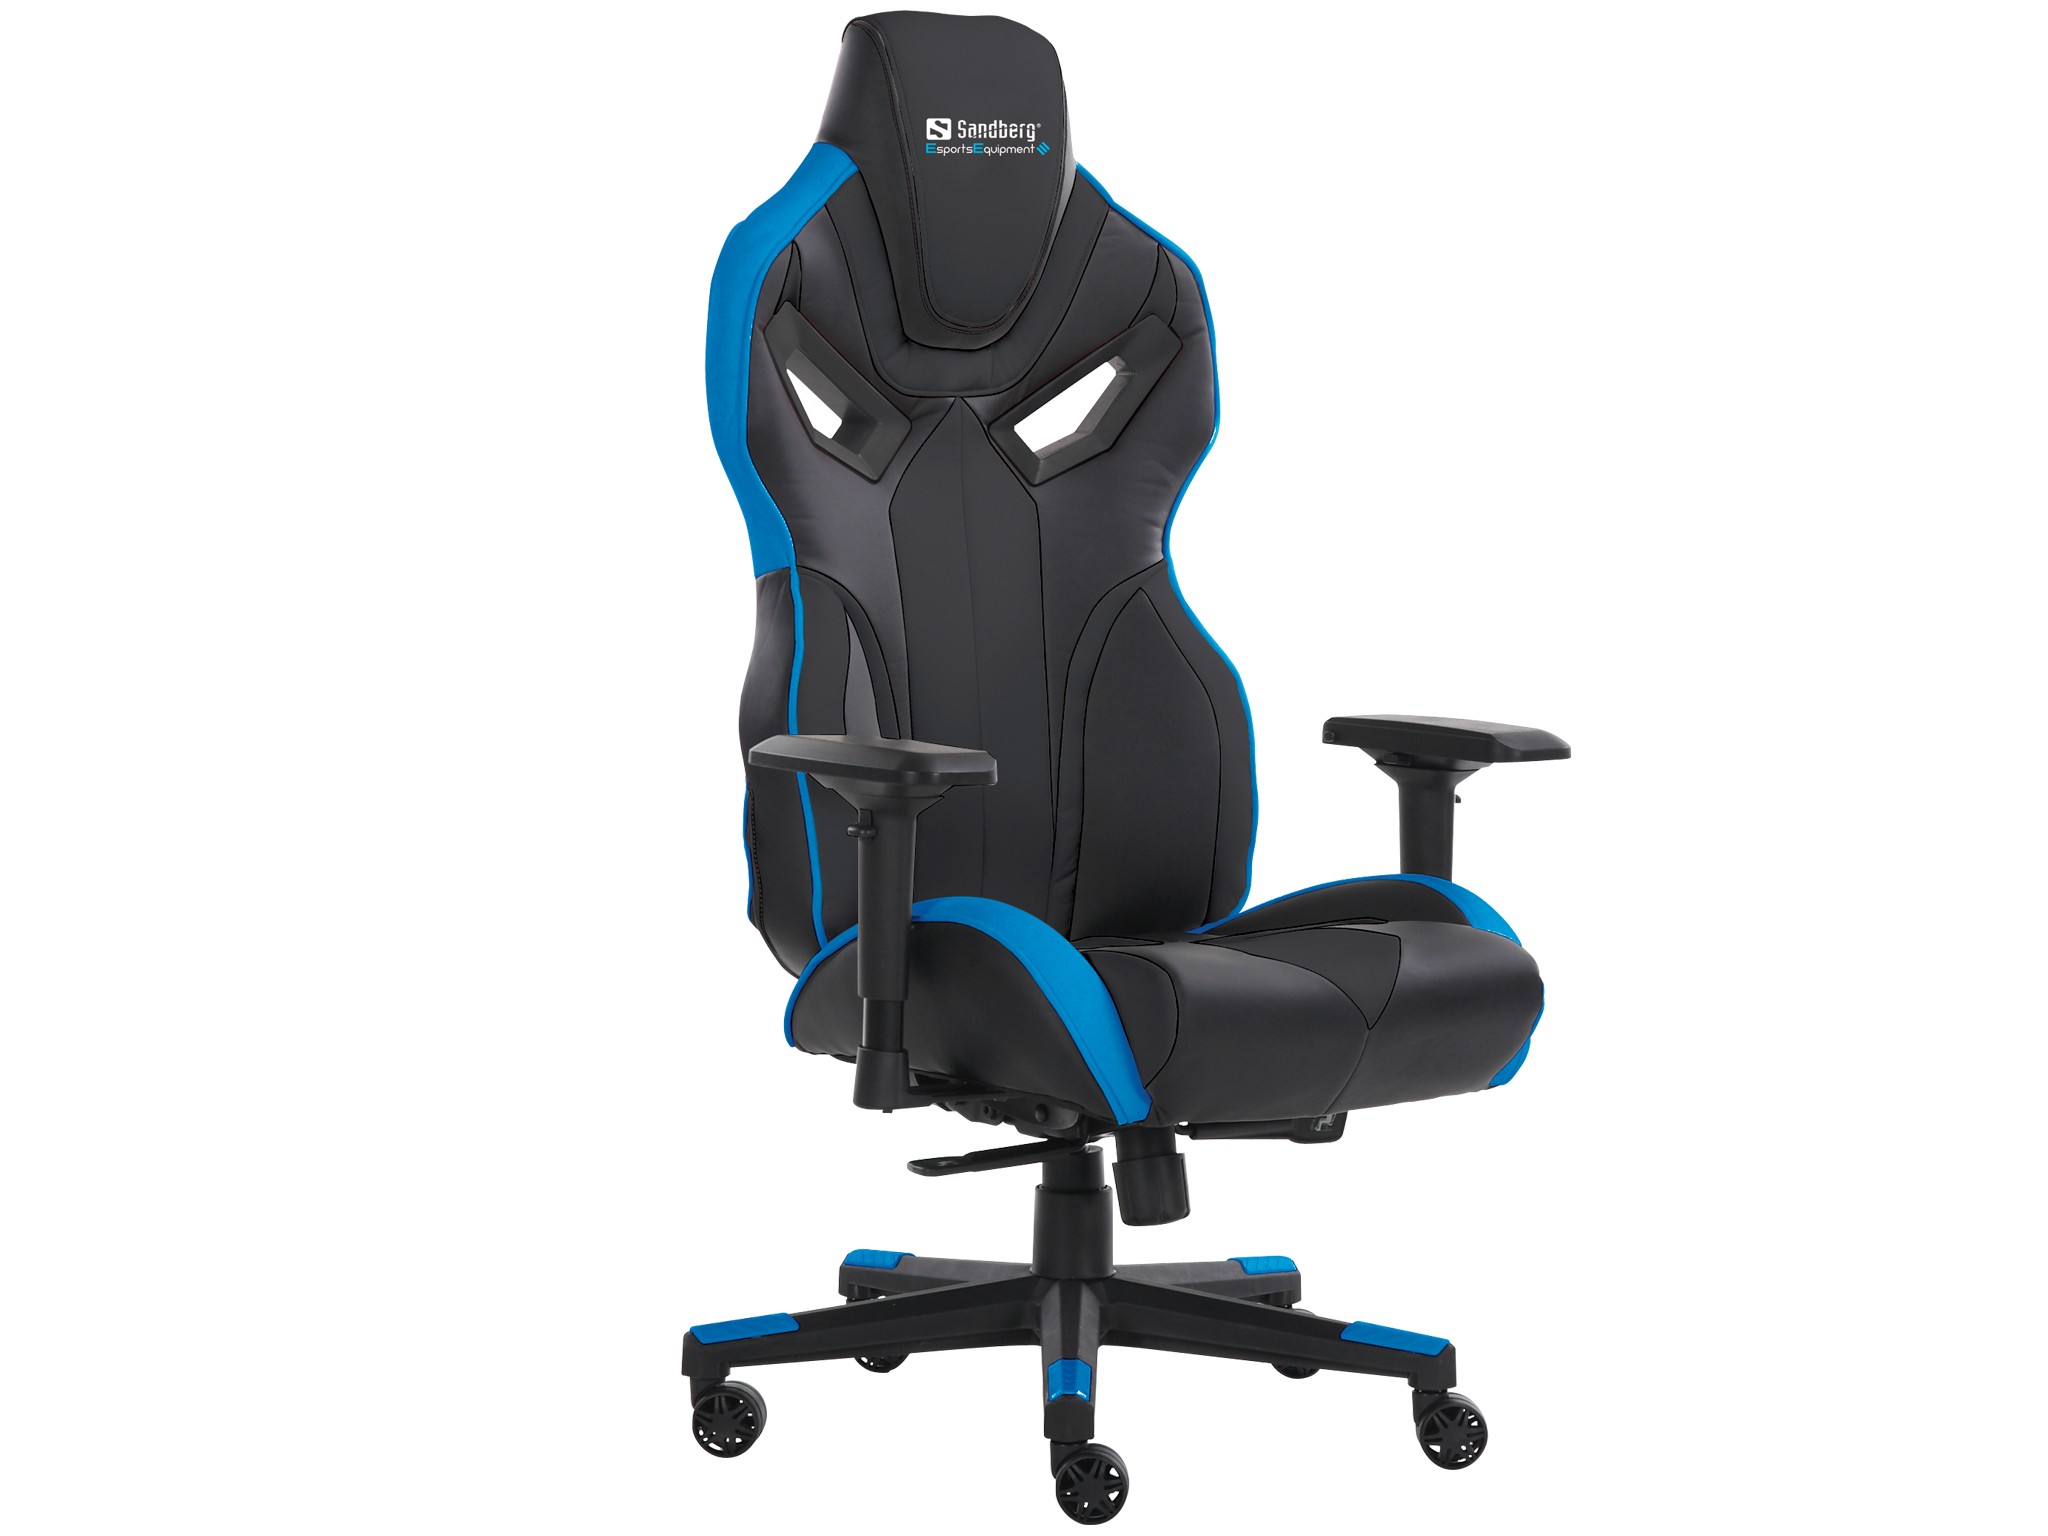 Voodoo Gaming Chair Black/Blue - 640-82